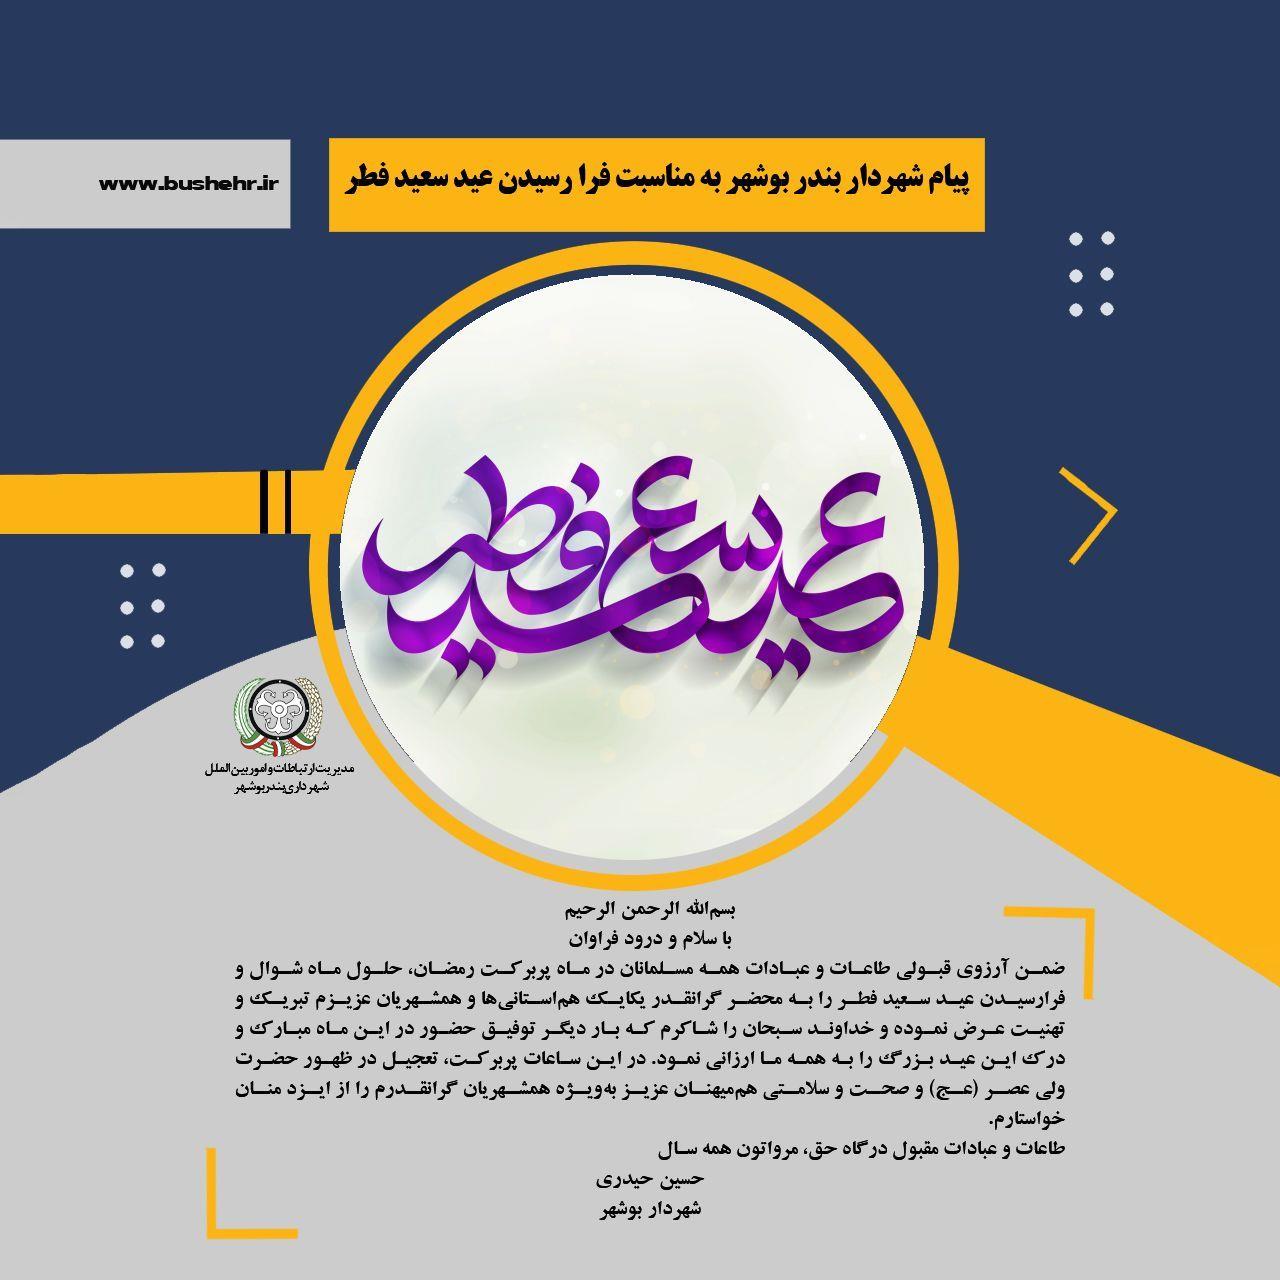 پیام شهردار بندر بوشهر به مناسبت فرارسیدن عید سعید فطر